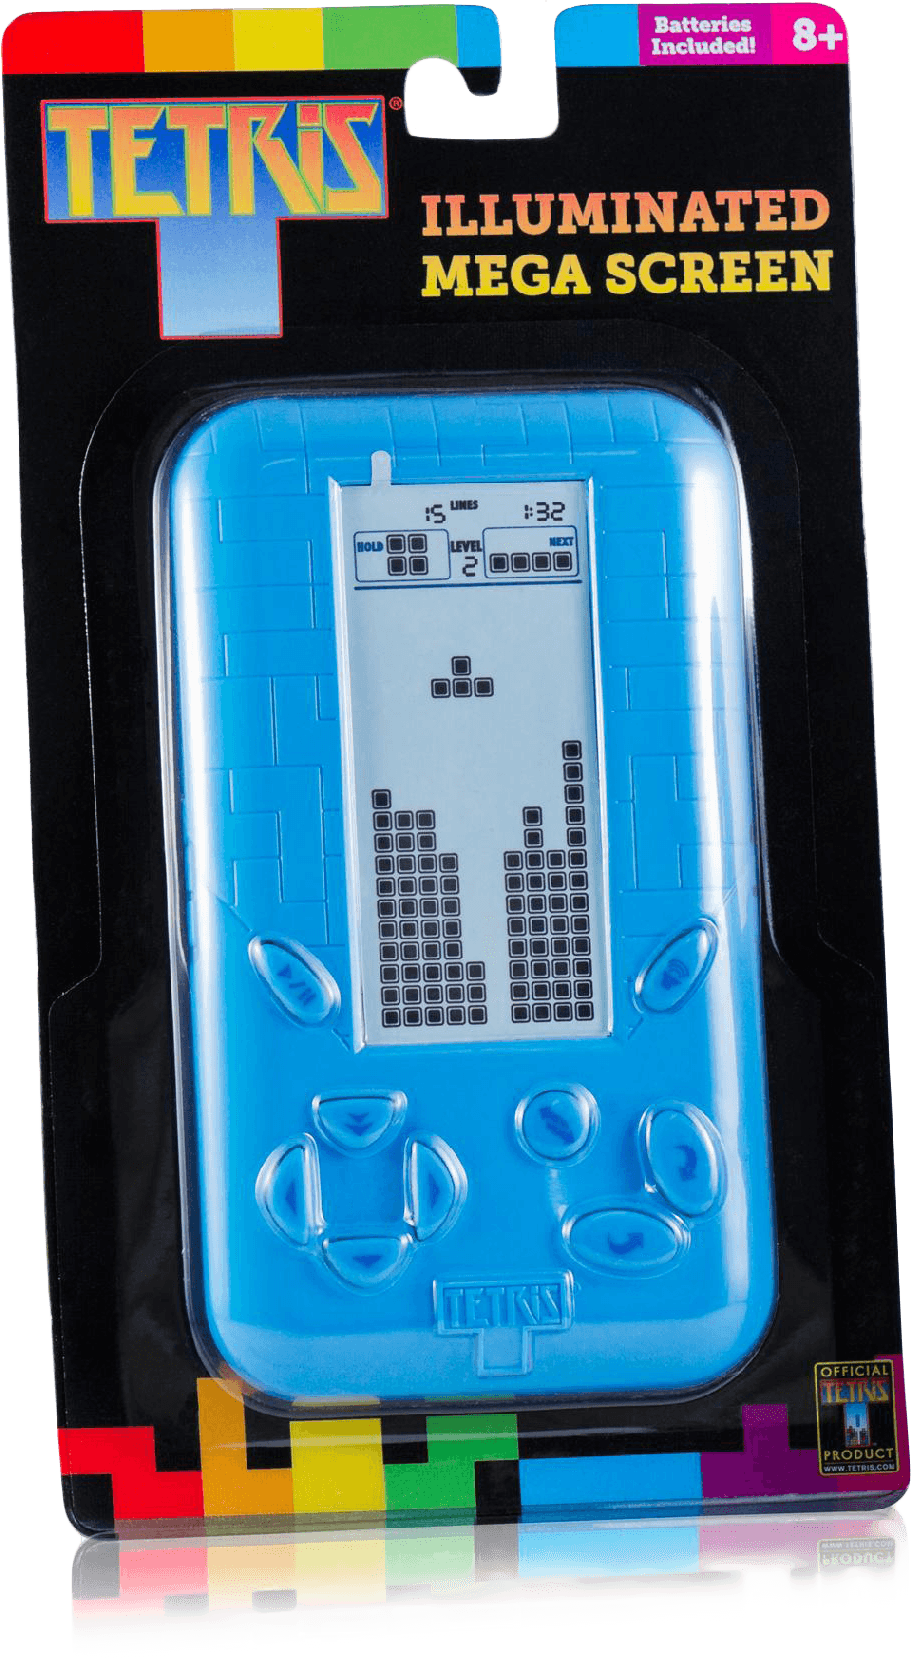 Tetris Illuminated Mega Screen Handheld Game 2012 NIB GR8 GAME MUST HAVE DURING 